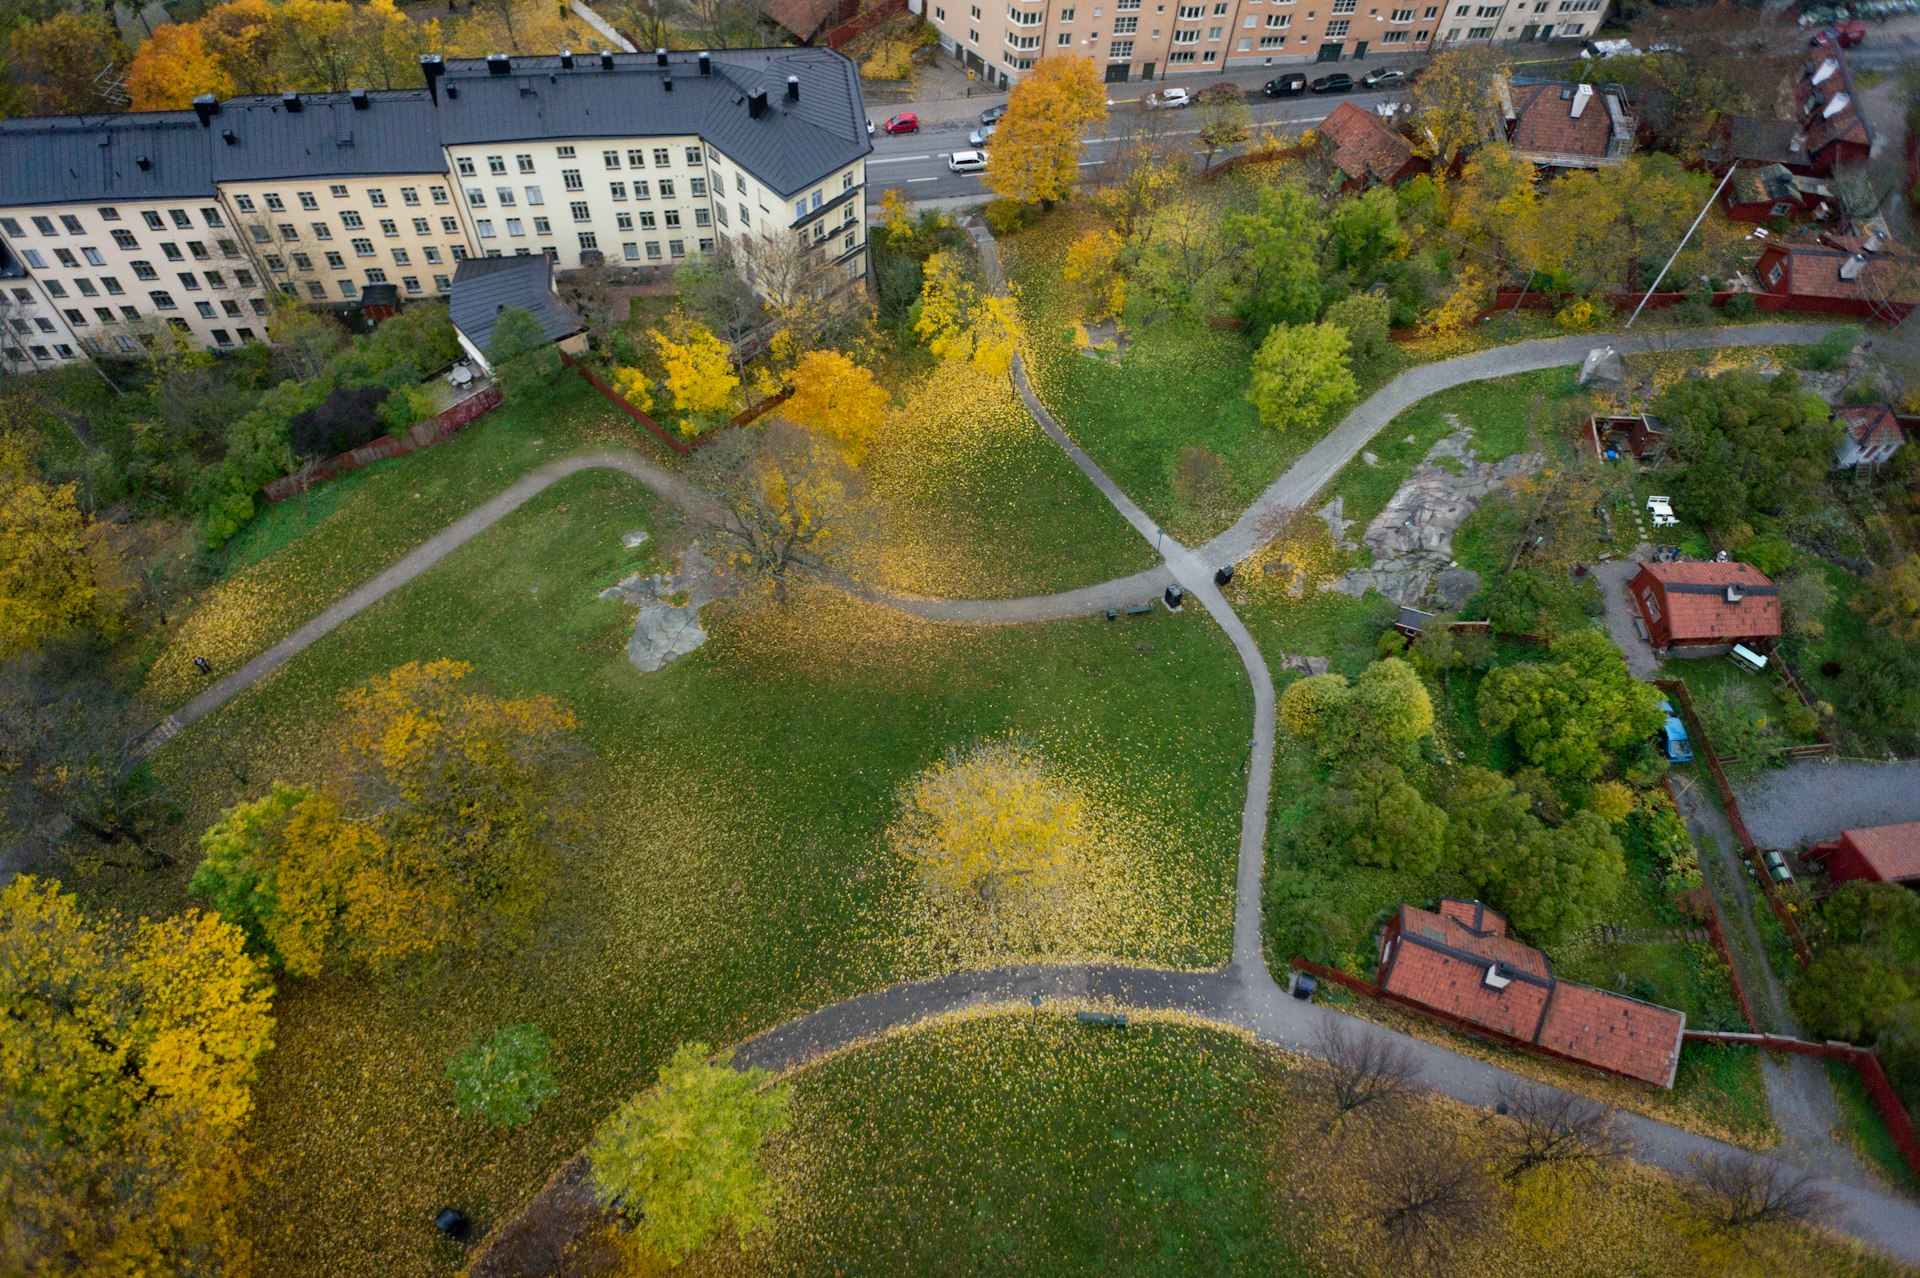 An overhead view of Vitabergsparken